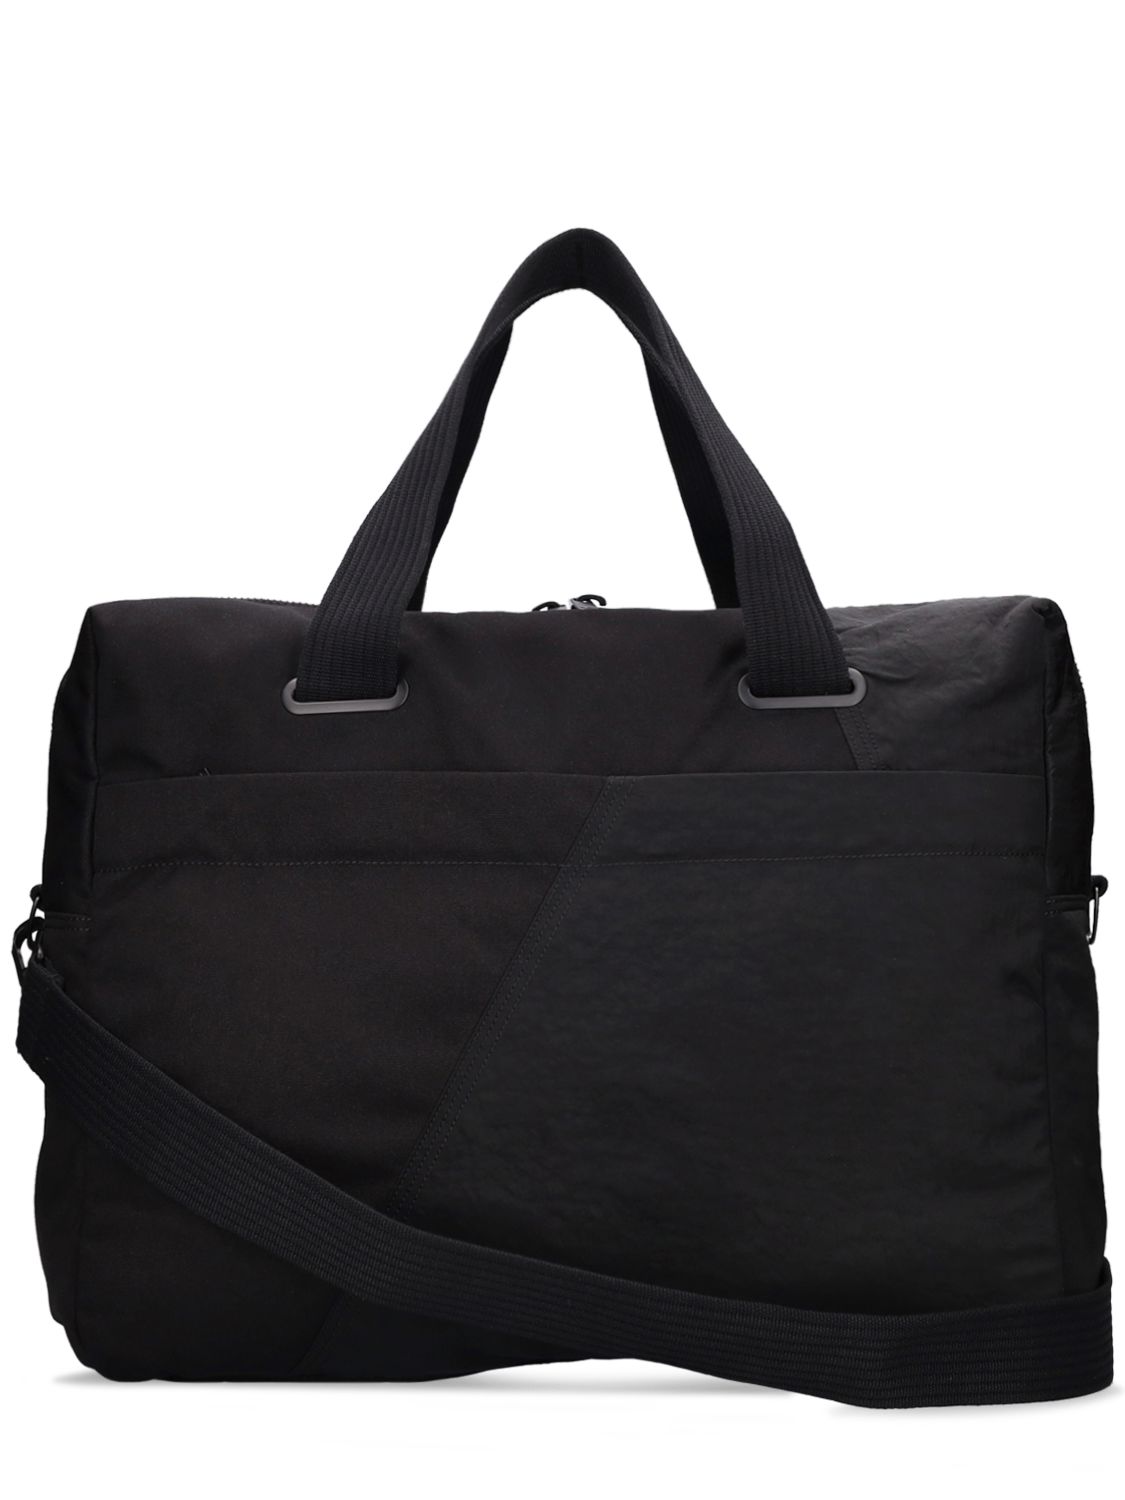 Shop Y-3 Hold All Duffel Bag In Black